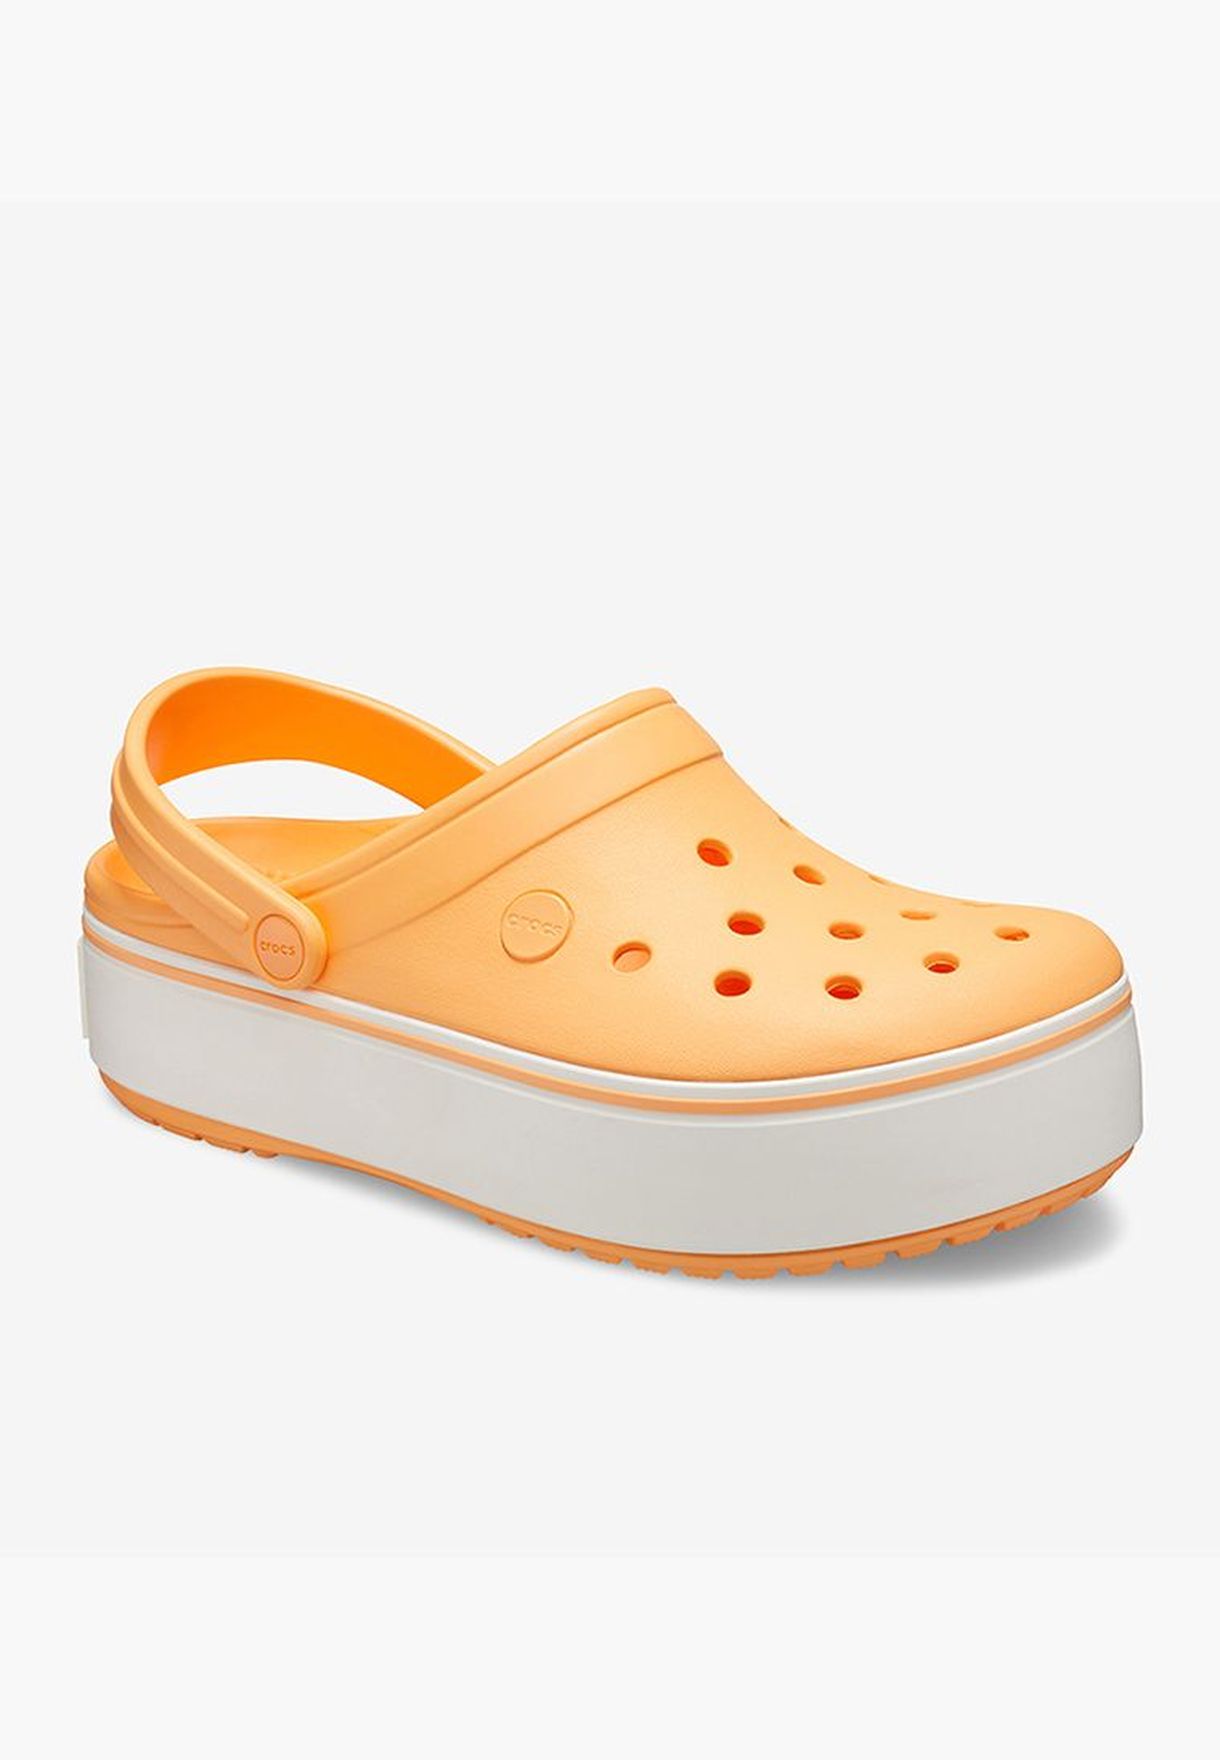 platform crocs orange